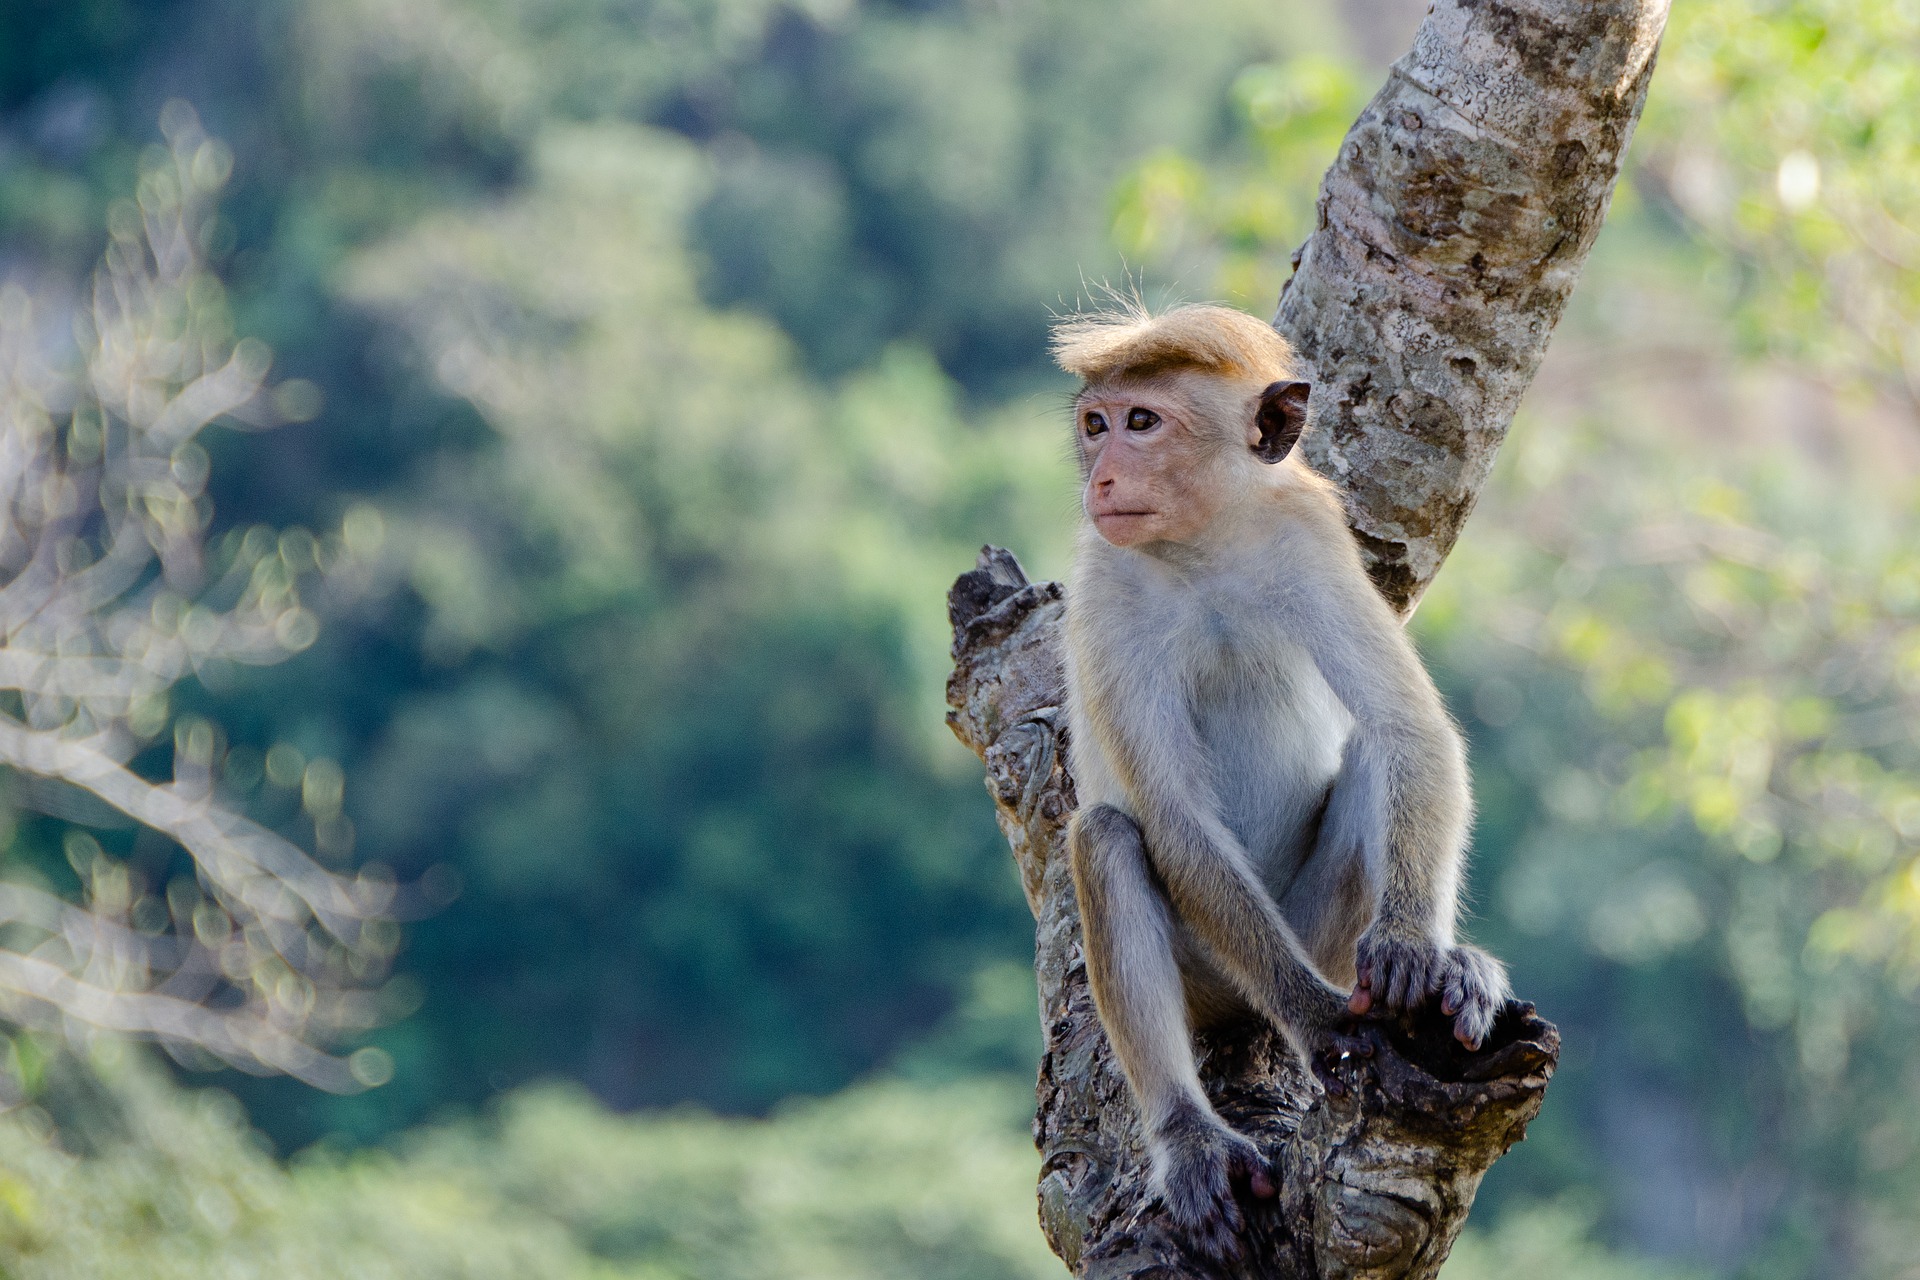 Monkey from Sri Lanka